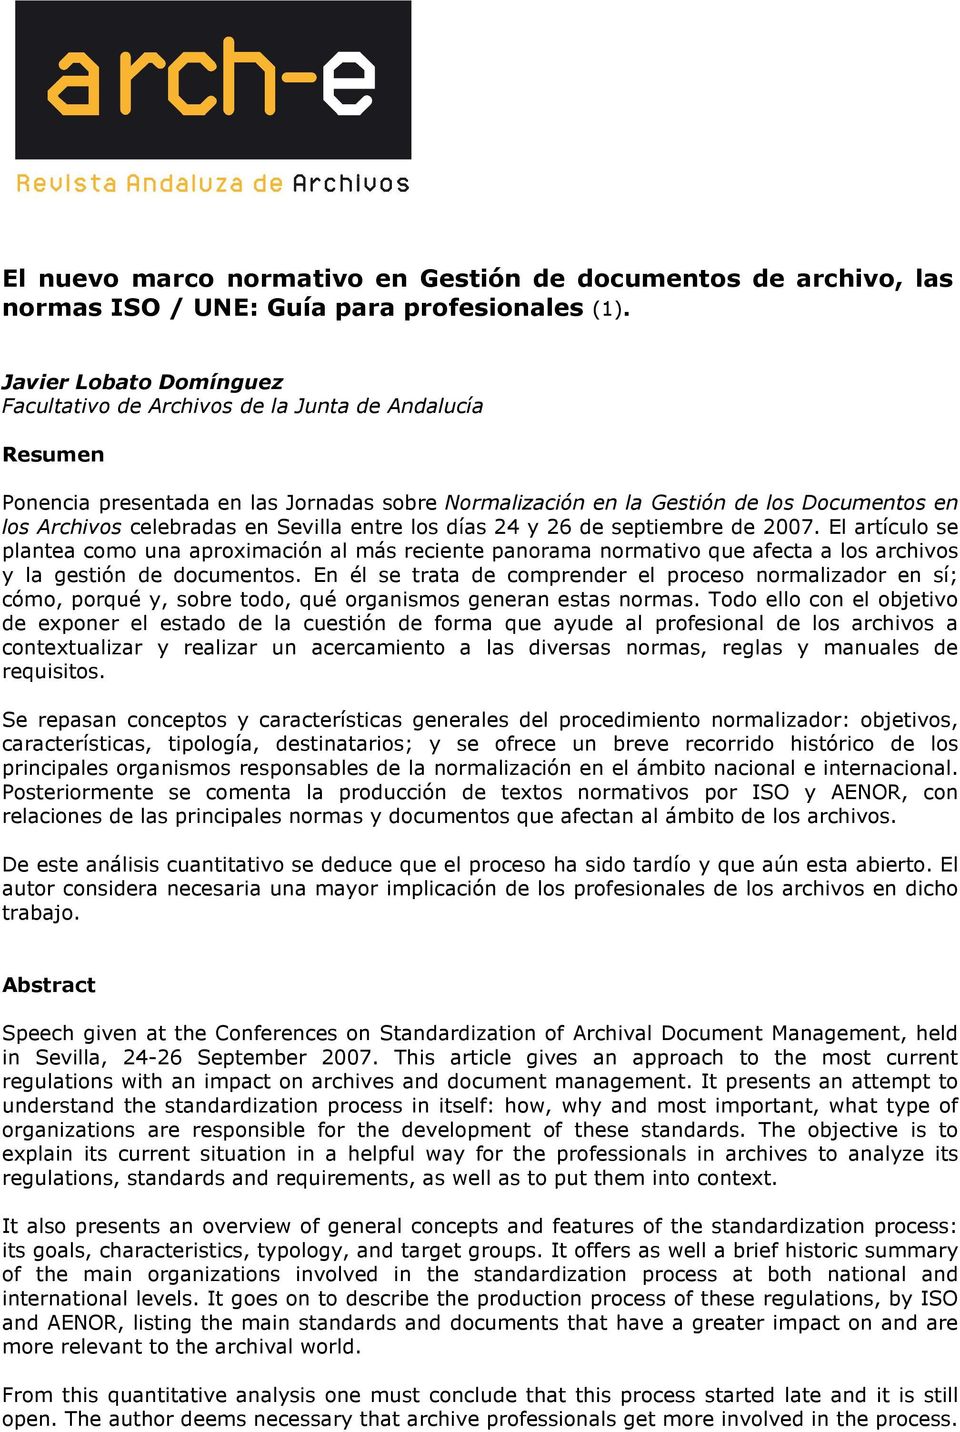 Sevilla entre los días 24 y 26 de septiembre de 2007. l artículo se plantea como una aproximación al más reciente panorama normativo que afecta a los archivos y la gestión de documentos.